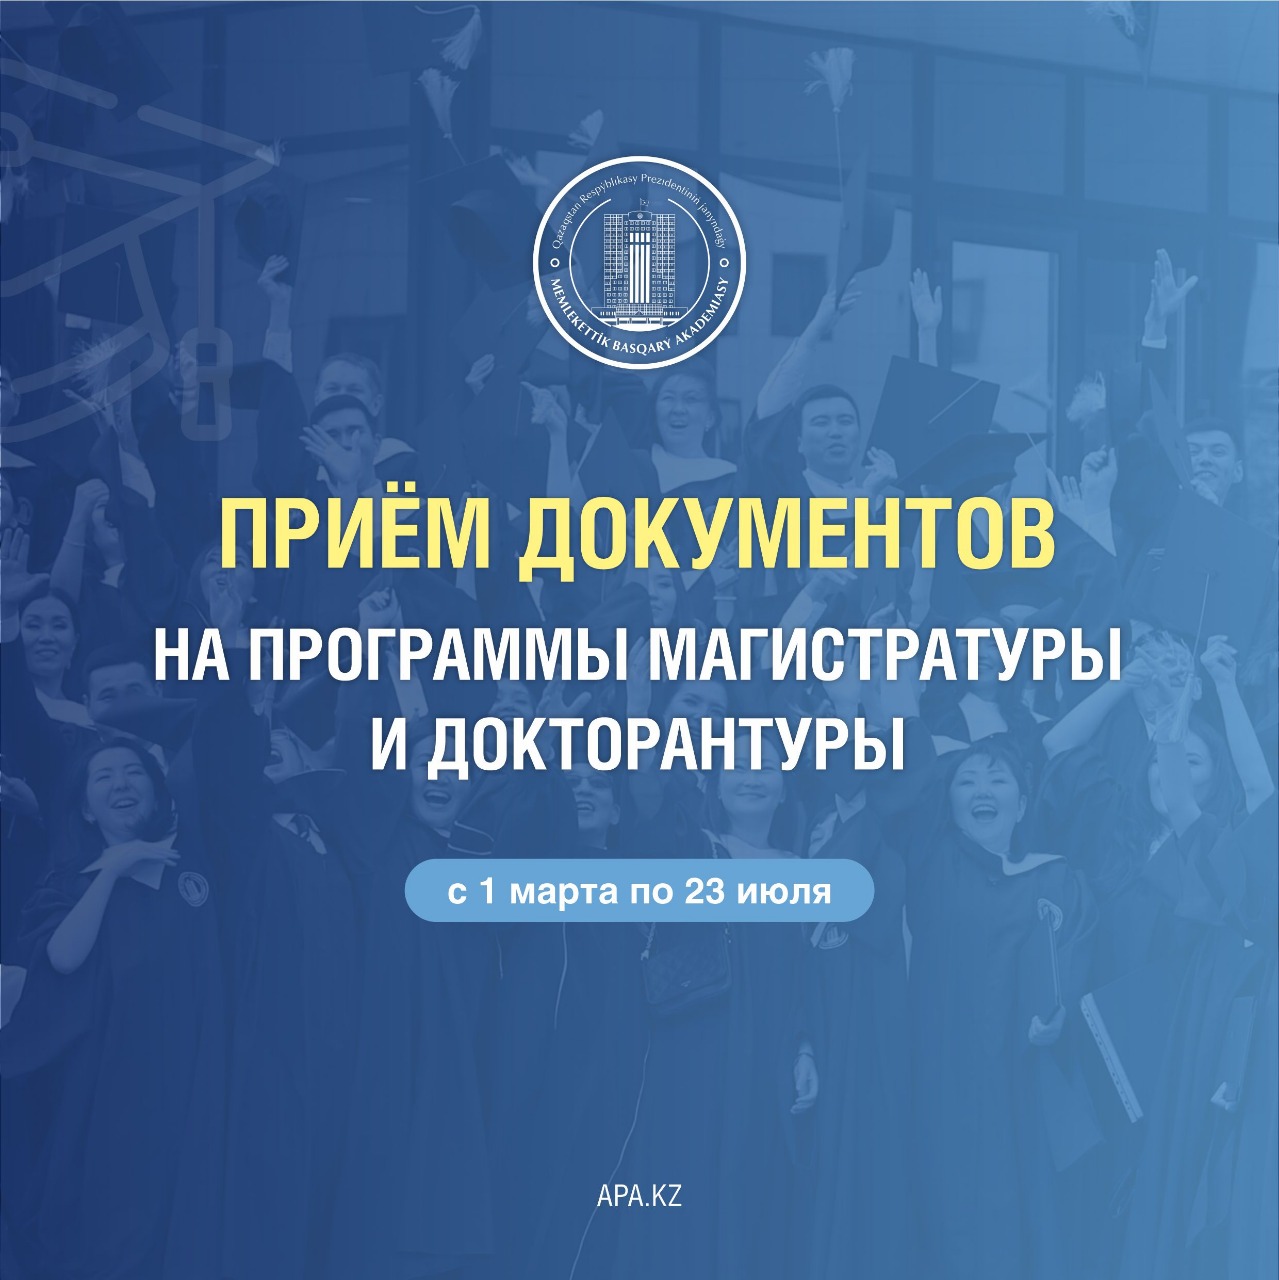 Академия государственного управления при Президенте Республики Казахстан осуществляет прием документов  на поступление в МАГИСТРАТУРУ и ДОКТОРАНТУРУ